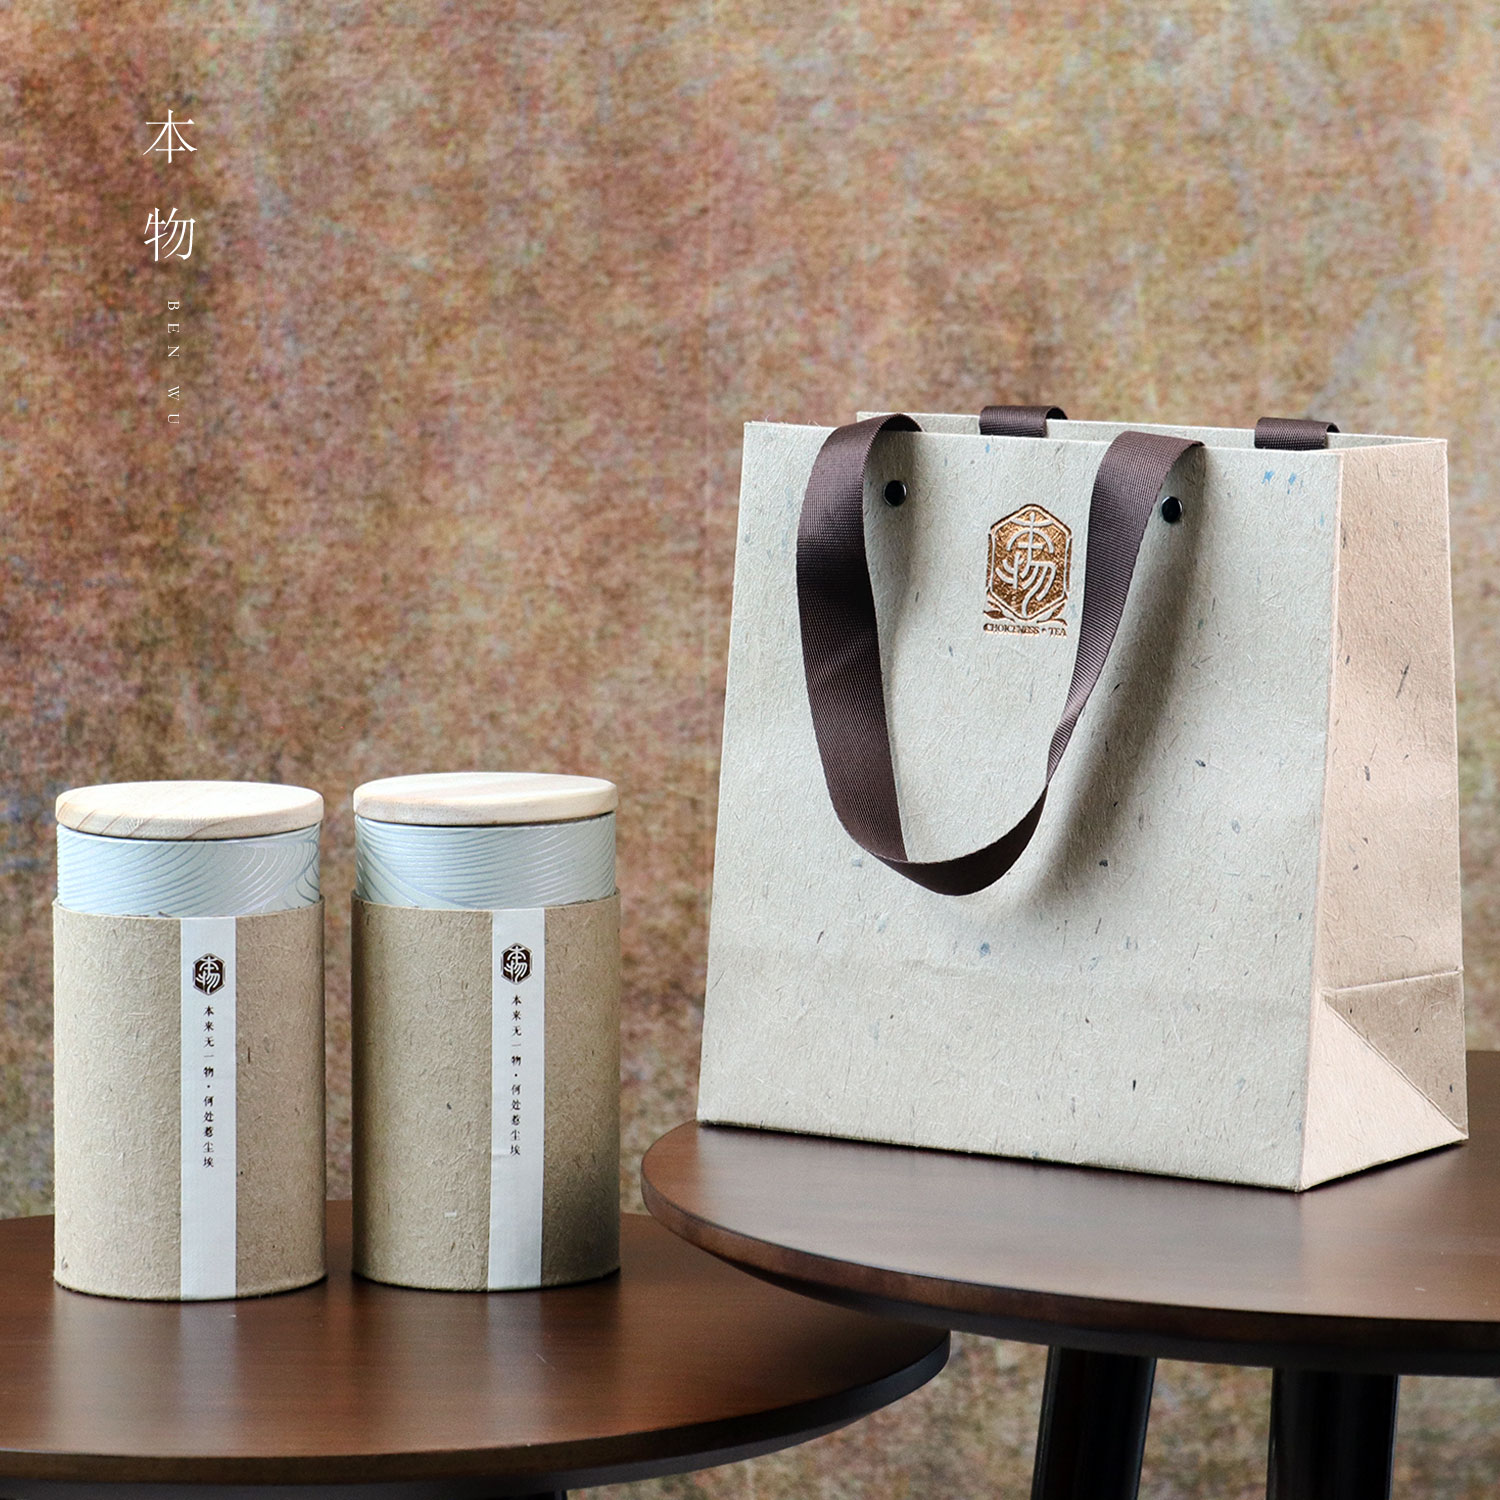 100克新款创意通用茶叶罐包装罐绿茶红茶沱茶包装盒纸筒定制松木 - 图1